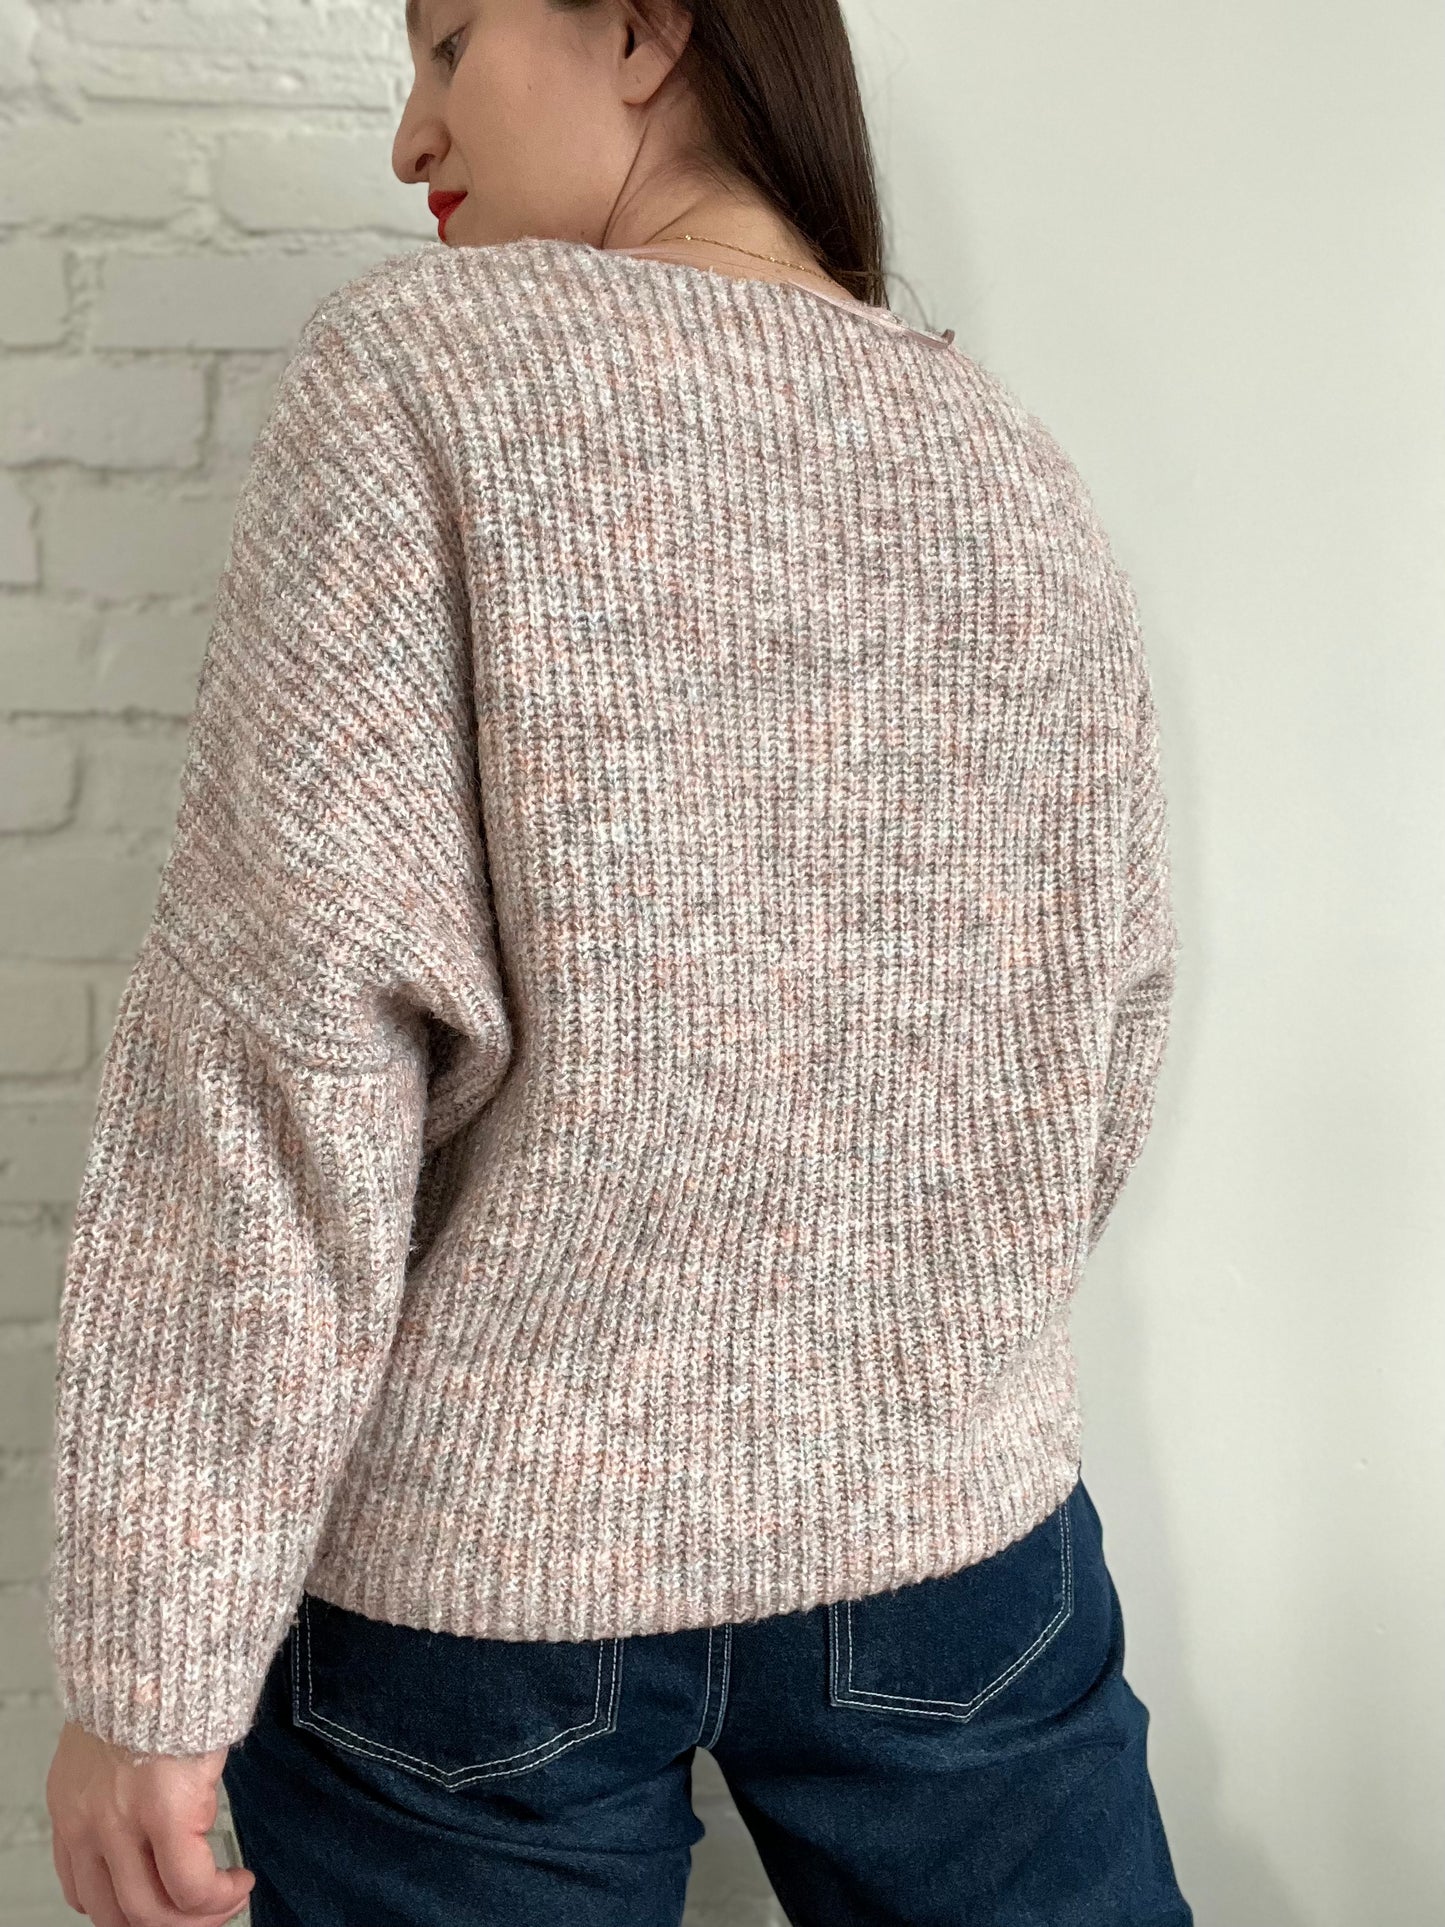 Blush Pink Soft Knit Sweater - XS/S